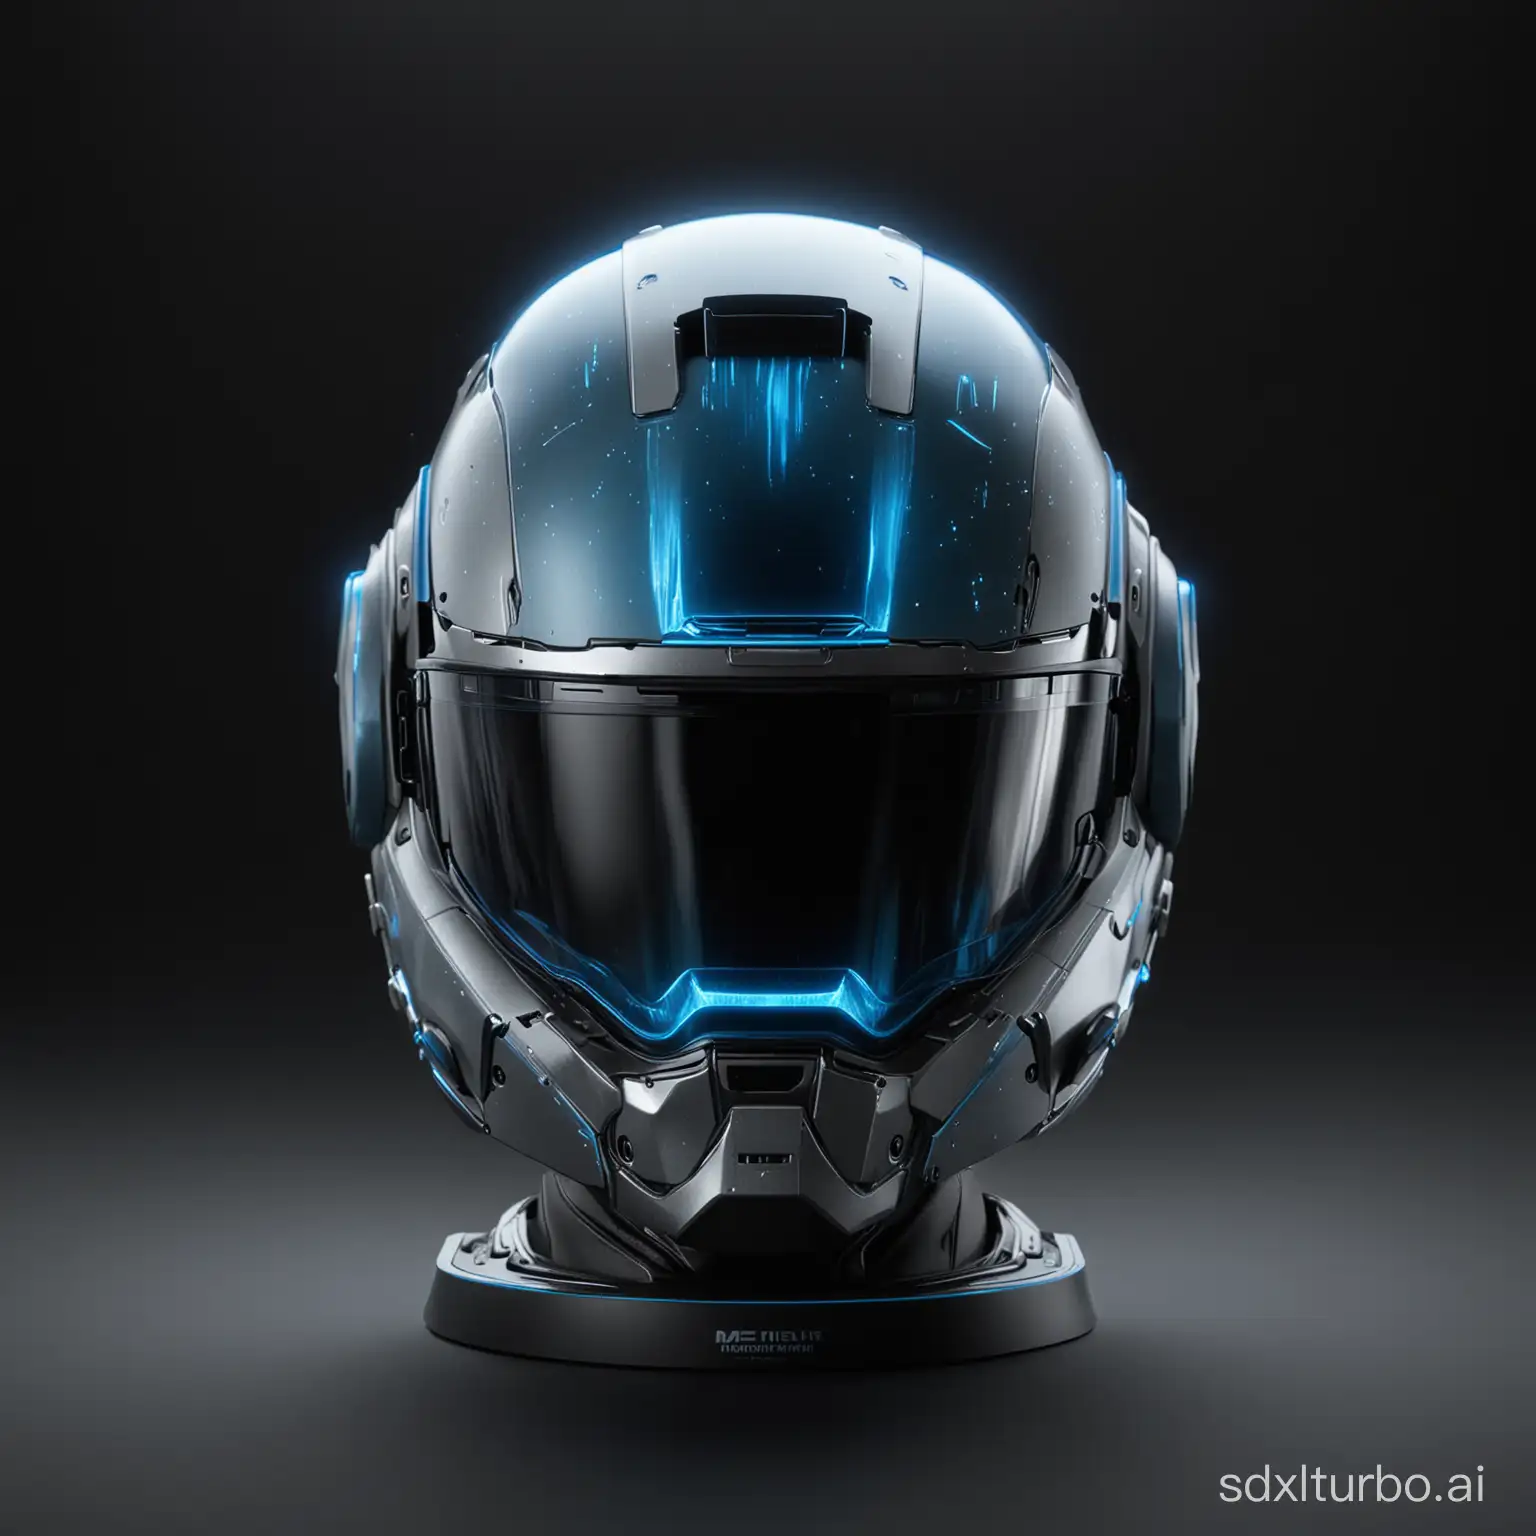 一个单独的头盔展示，未来科技感，精美逼真的细节，星际风格，蓝灰色，发出科技蓝焰，8K高清图，特写侧面镜头，不要文字，纯黑色背景